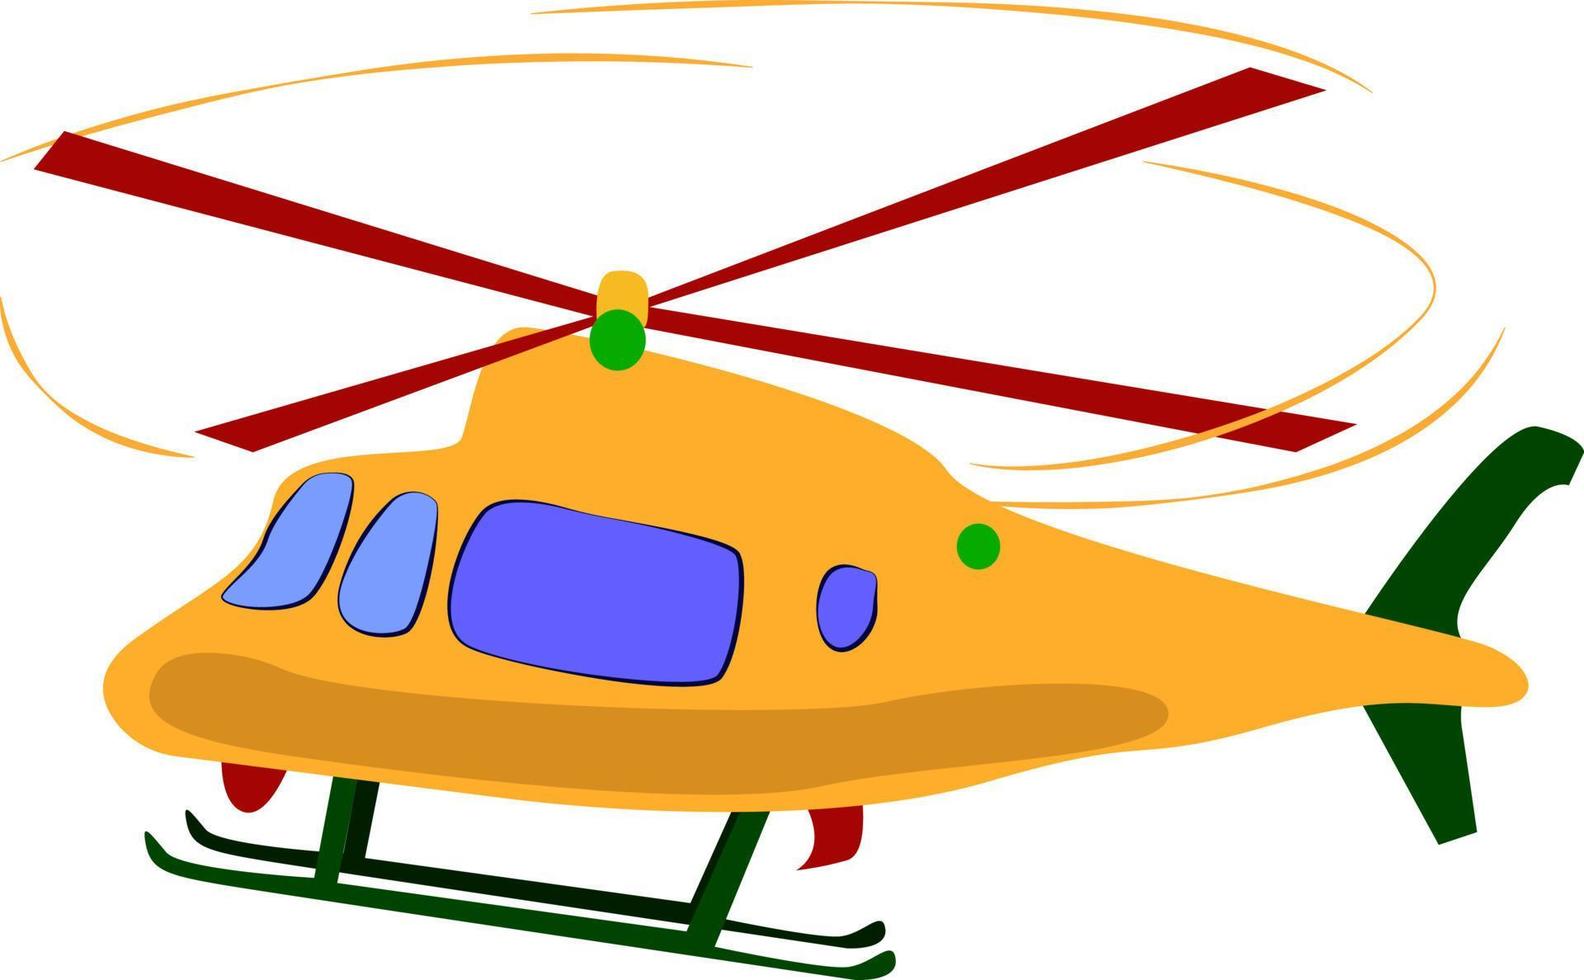 Helicóptero amarillo, ilustración, vector sobre fondo blanco.